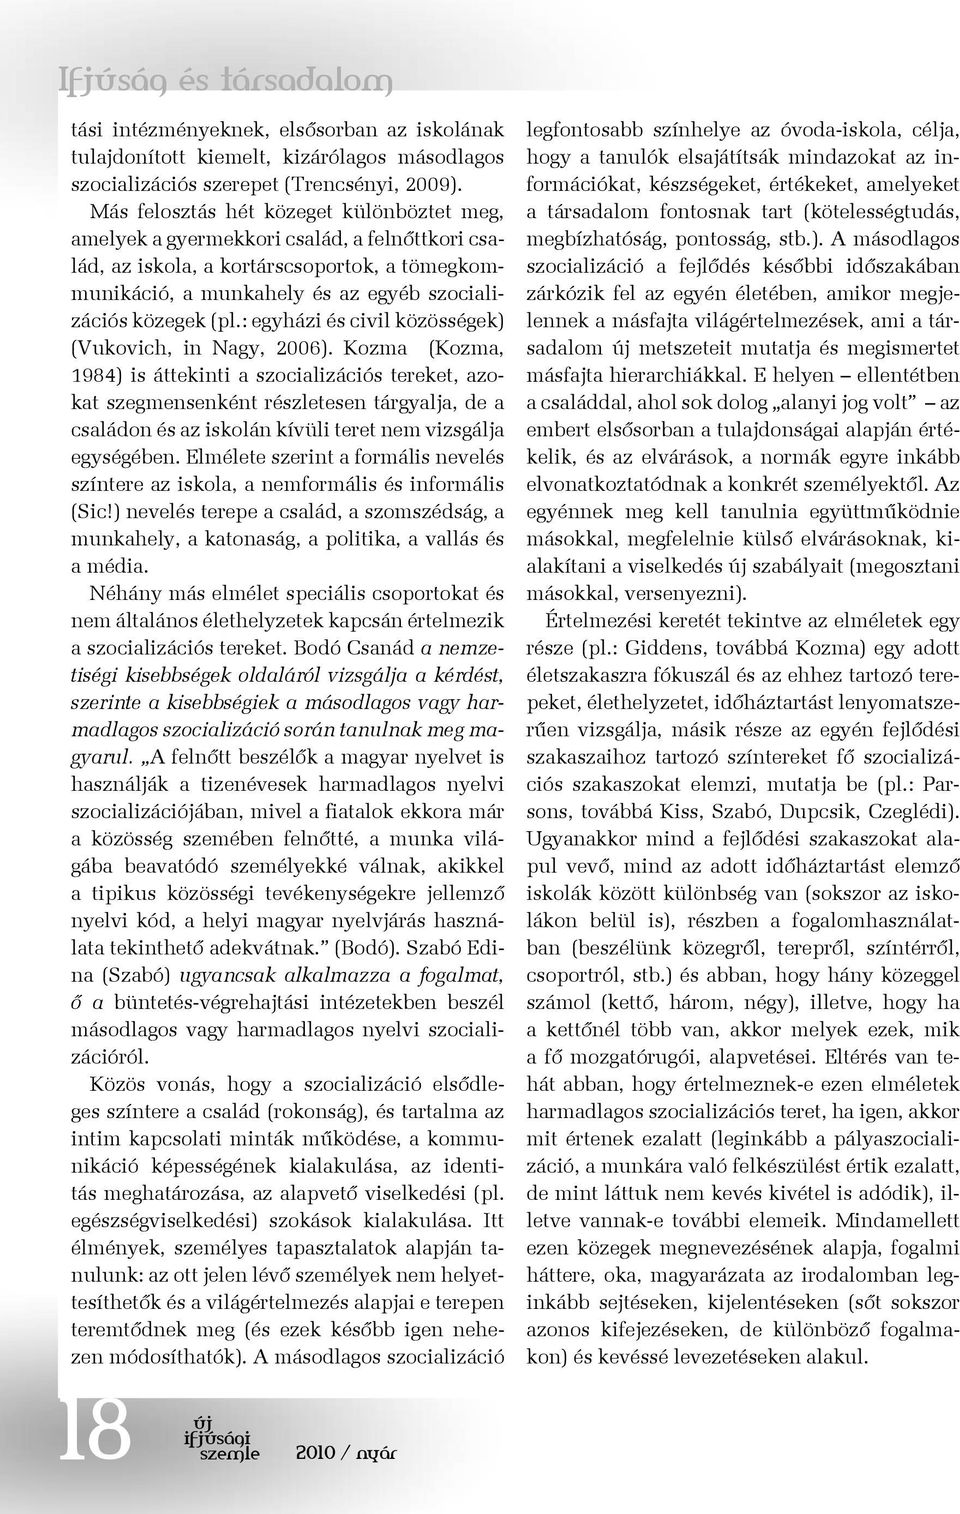 : egyházi és civil közösségek) (Vukovich, in Nagy, 2006).